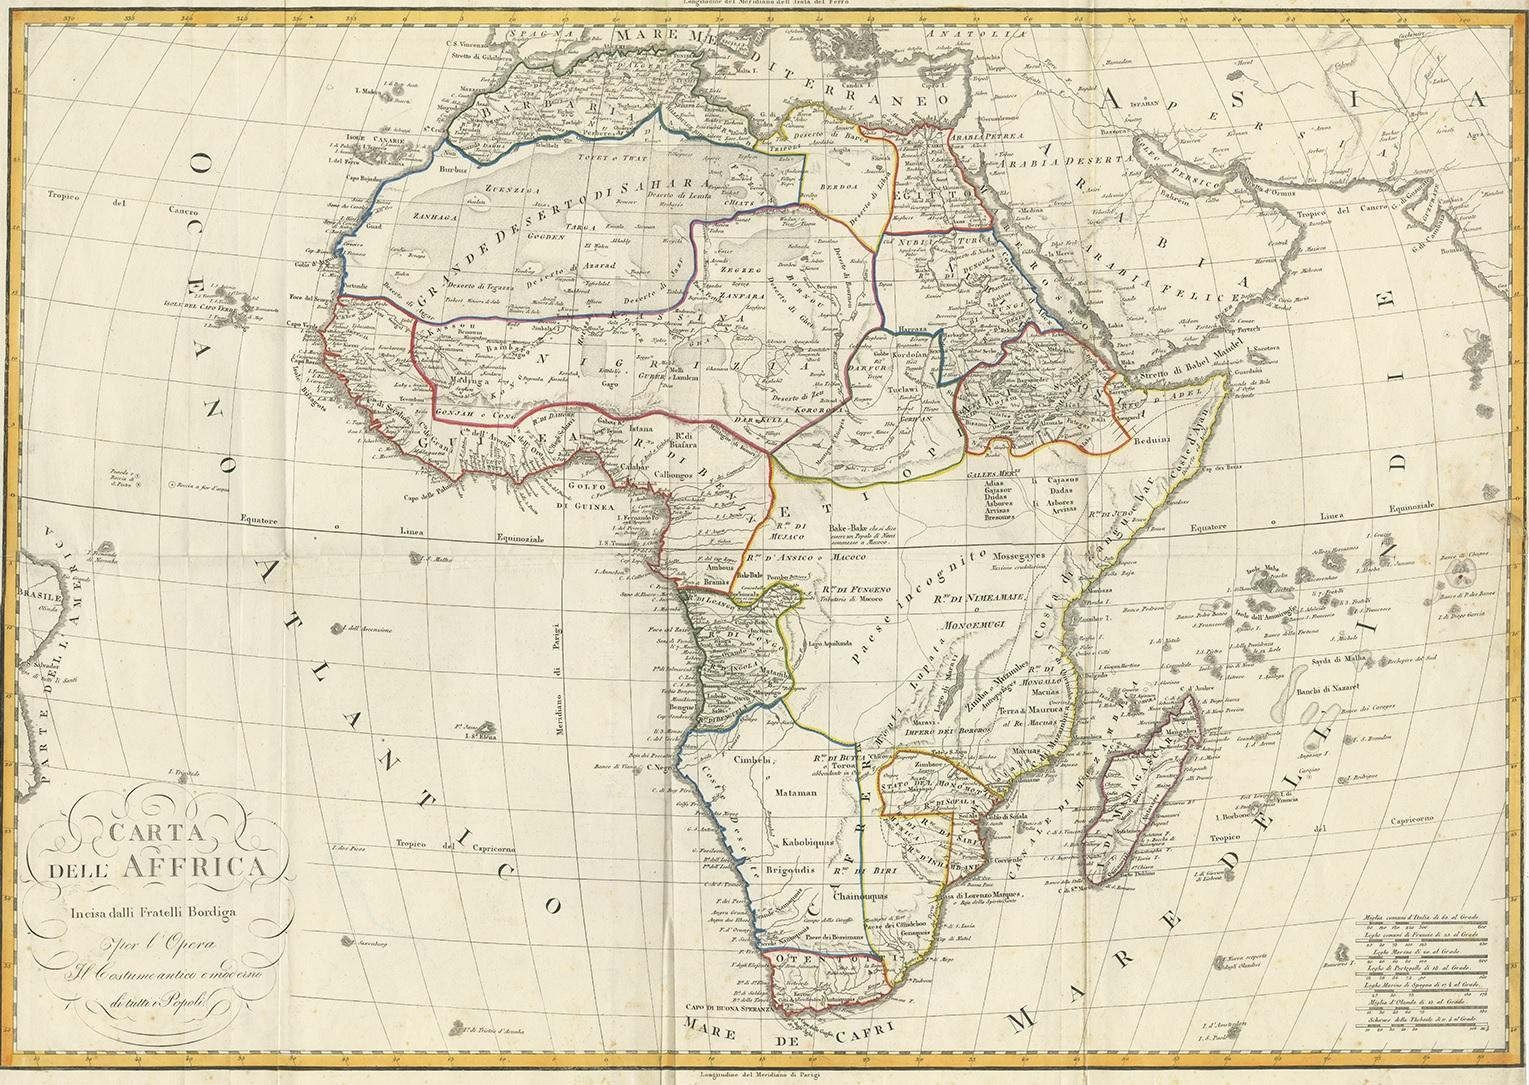 Antike Karte mit dem Titel 'Carta dell Africa'. Große und recht seltene italienische Karte von Afrika, die den damaligen Kenntnisstand über die Geografie des Kontinents widerspiegelt, wobei große Gebiete völlig leer gelassen wurden. Soweit bekannt,